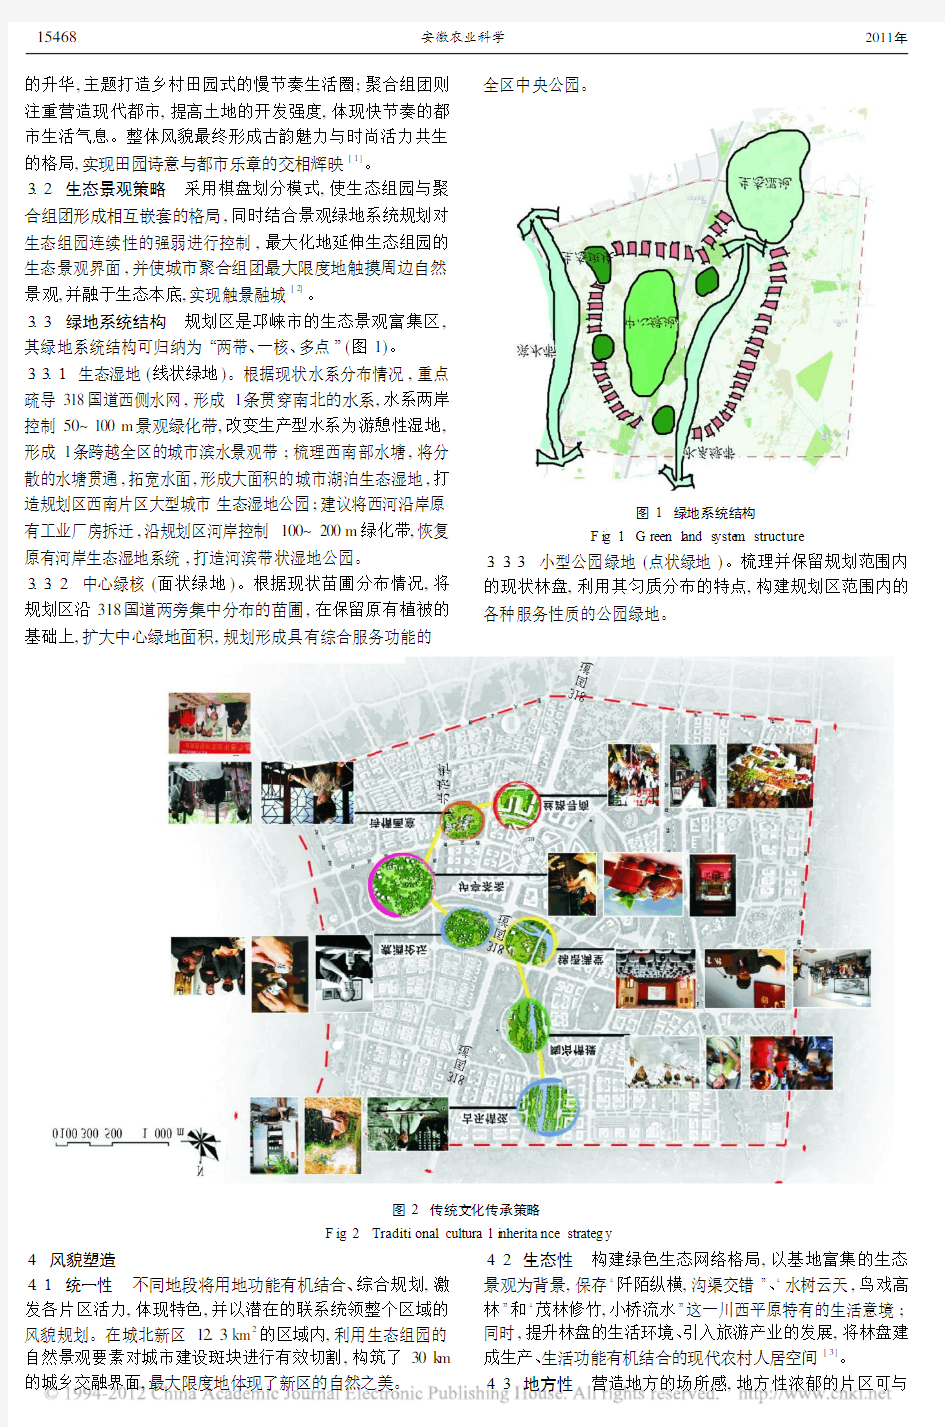 邛崃市城北新区田园城市概念规划设计